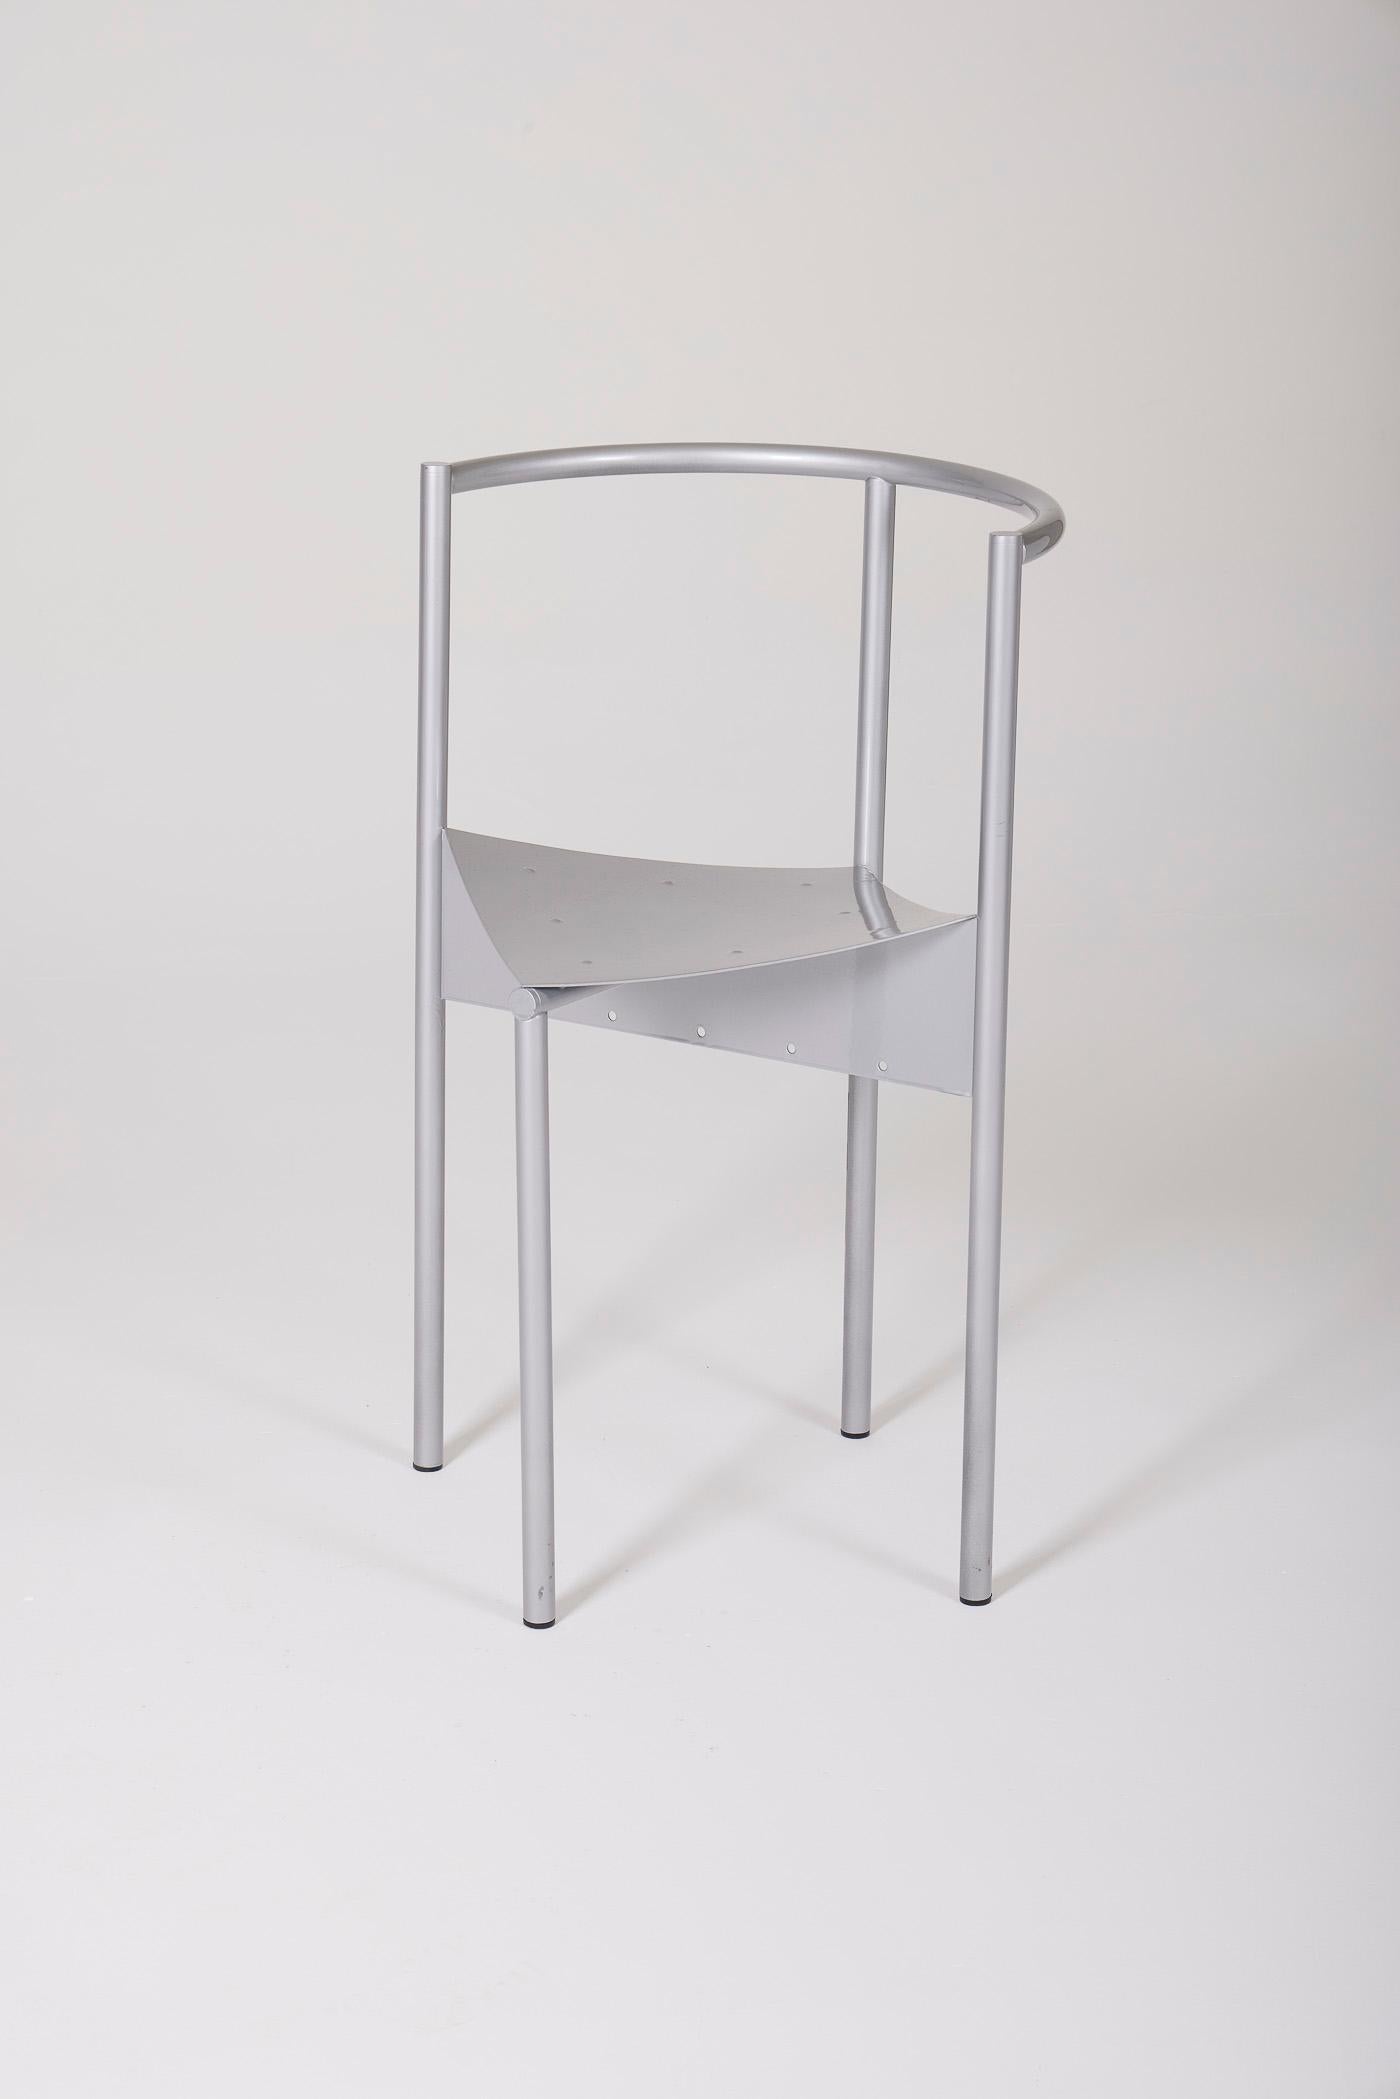 Chaise modèle Wendy Wright du designer français Philippe Starck pour Disform, datant des années 1980. Il est en métal anodisé blanc/gris. En très bon état.
DV516